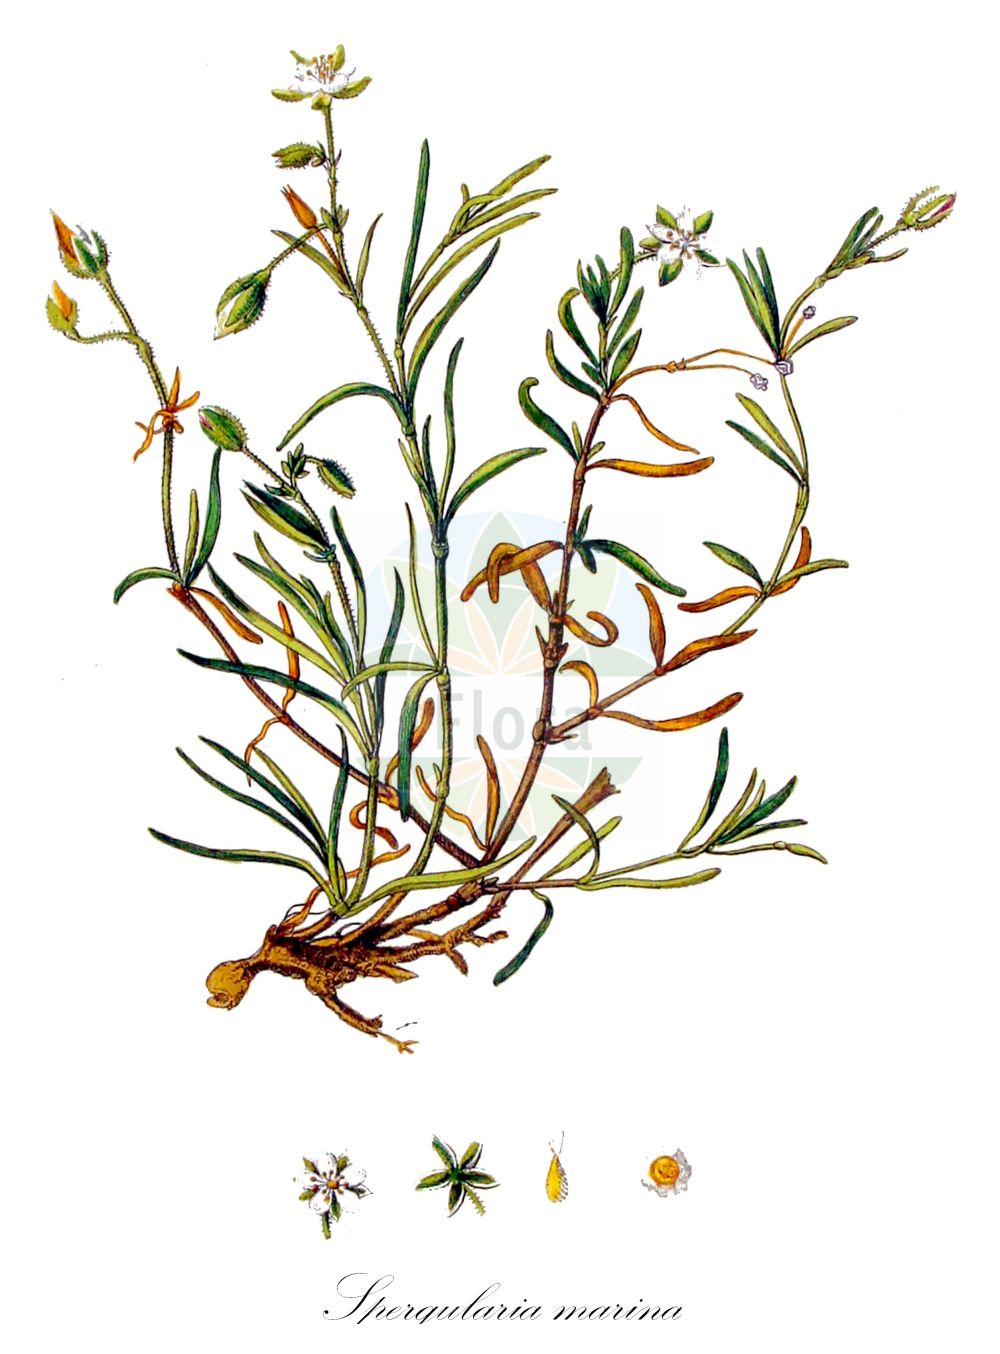 Historische Abbildung von Spergularia marina (Salz-Schuppenmiere - Lesser Sea-spurrey). Das Bild zeigt Blatt, Bluete, Frucht und Same. ---- Historical Drawing of Spergularia marina (Salz-Schuppenmiere - Lesser Sea-spurrey). The image is showing leaf, flower, fruit and seed.(Spergularia marina,Salz-Schuppenmiere,Lesser Sea-spurrey,Arenaria halophila,Arenaria heterosperma,Corium halophilum,Spergula salina,Spergularia dillenii,Spergularia heterosperma,Spergularia longicaulis,Spergularia salina,Spergularia sperguloides,Spergularia urbica,Spergularia marina,Salz-Schuppenmiere,Meeres-Schuppenmiere,Lesser Sea-spurrey,Salt Sandspurry,Saltmarsh Sand Spurrey,Spergularia,Schuppenmiere,Sandspurry,Caryophyllaceae,Nelkengewächse,Pink family,Blatt,Bluete,Frucht,Same,leaf,flower,fruit,seed,Kops (1800-1934))